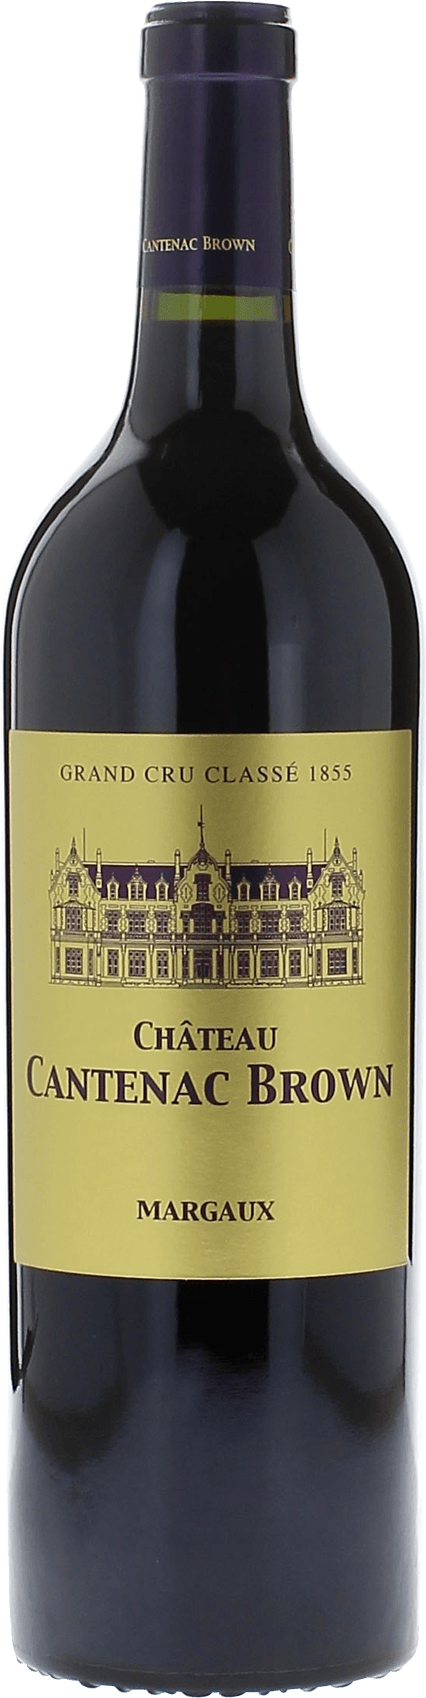 Cantenac brown 2015 2me Grand cru class Margaux, Bordeaux rouge